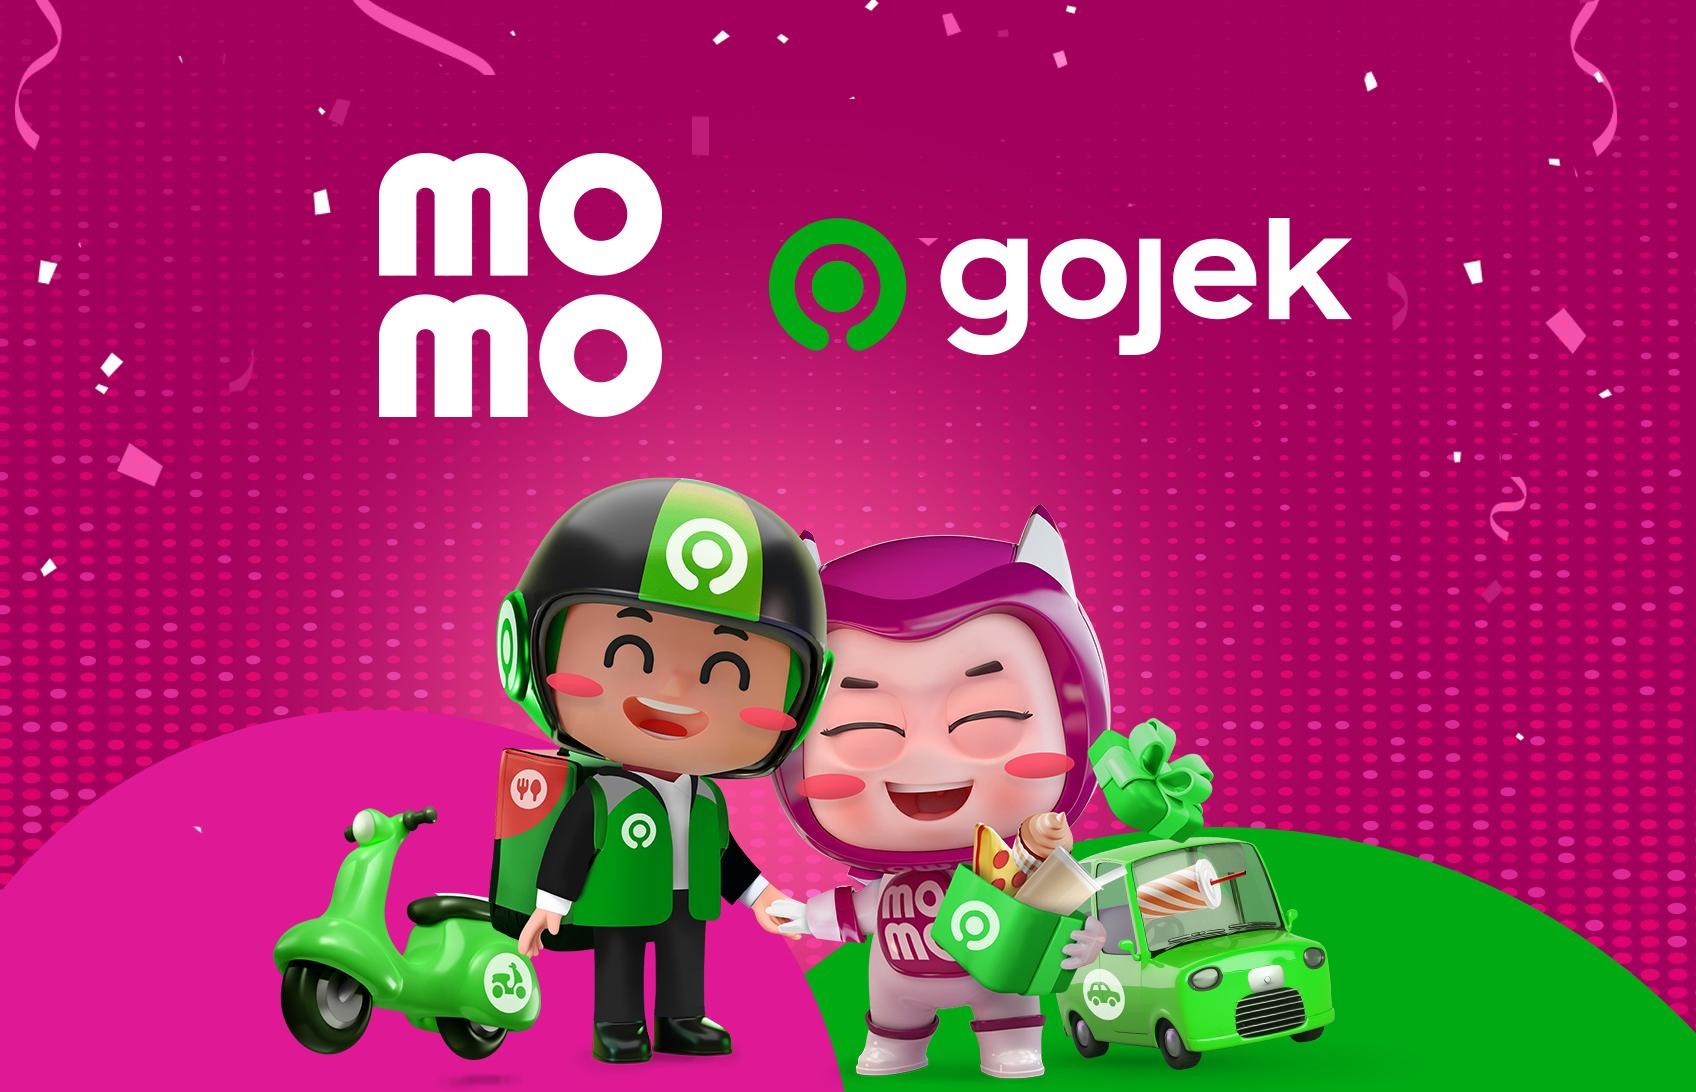 Gojek, MoMo: Dịch vụ giao thông công cộng Gojek và ví điện tử MoMo đã cùng hợp tác với nhau, mang đến cho người dùng tiện ích và an toàn khi di chuyển. Hơn nữa, việc thanh toán qua MoMo giúp cho giao dịch được thực hiện nhanh chóng và hiệu quả.